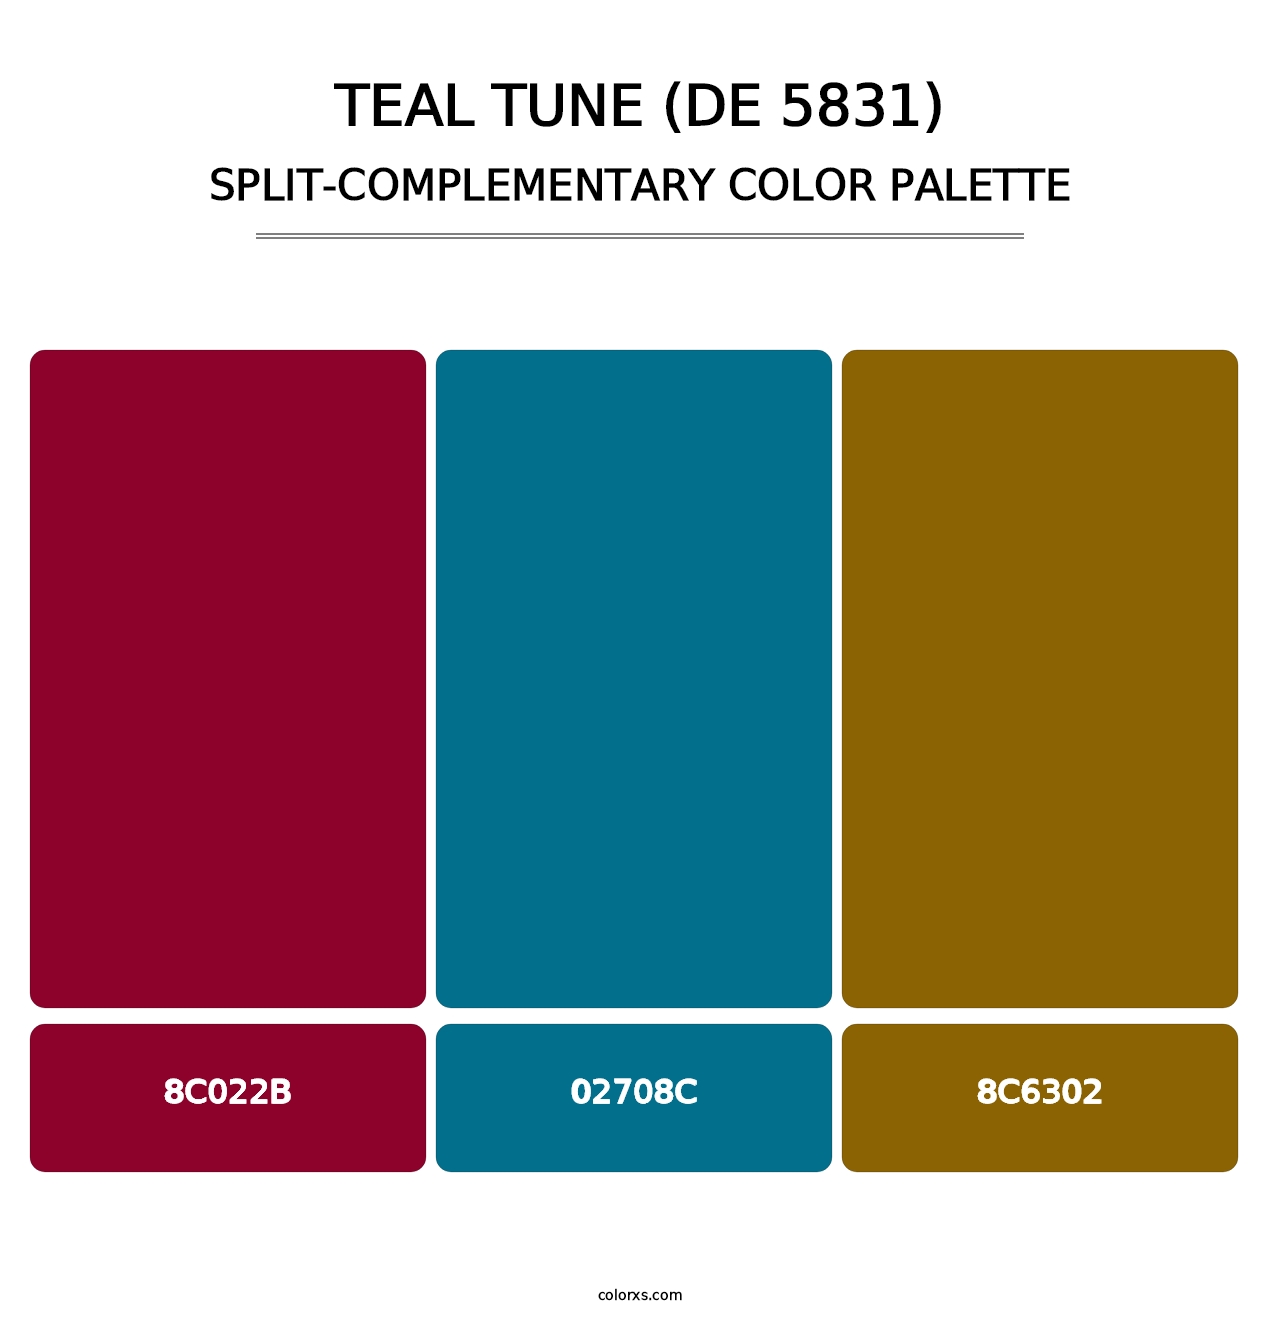 Teal Tune (DE 5831) - Split-Complementary Color Palette